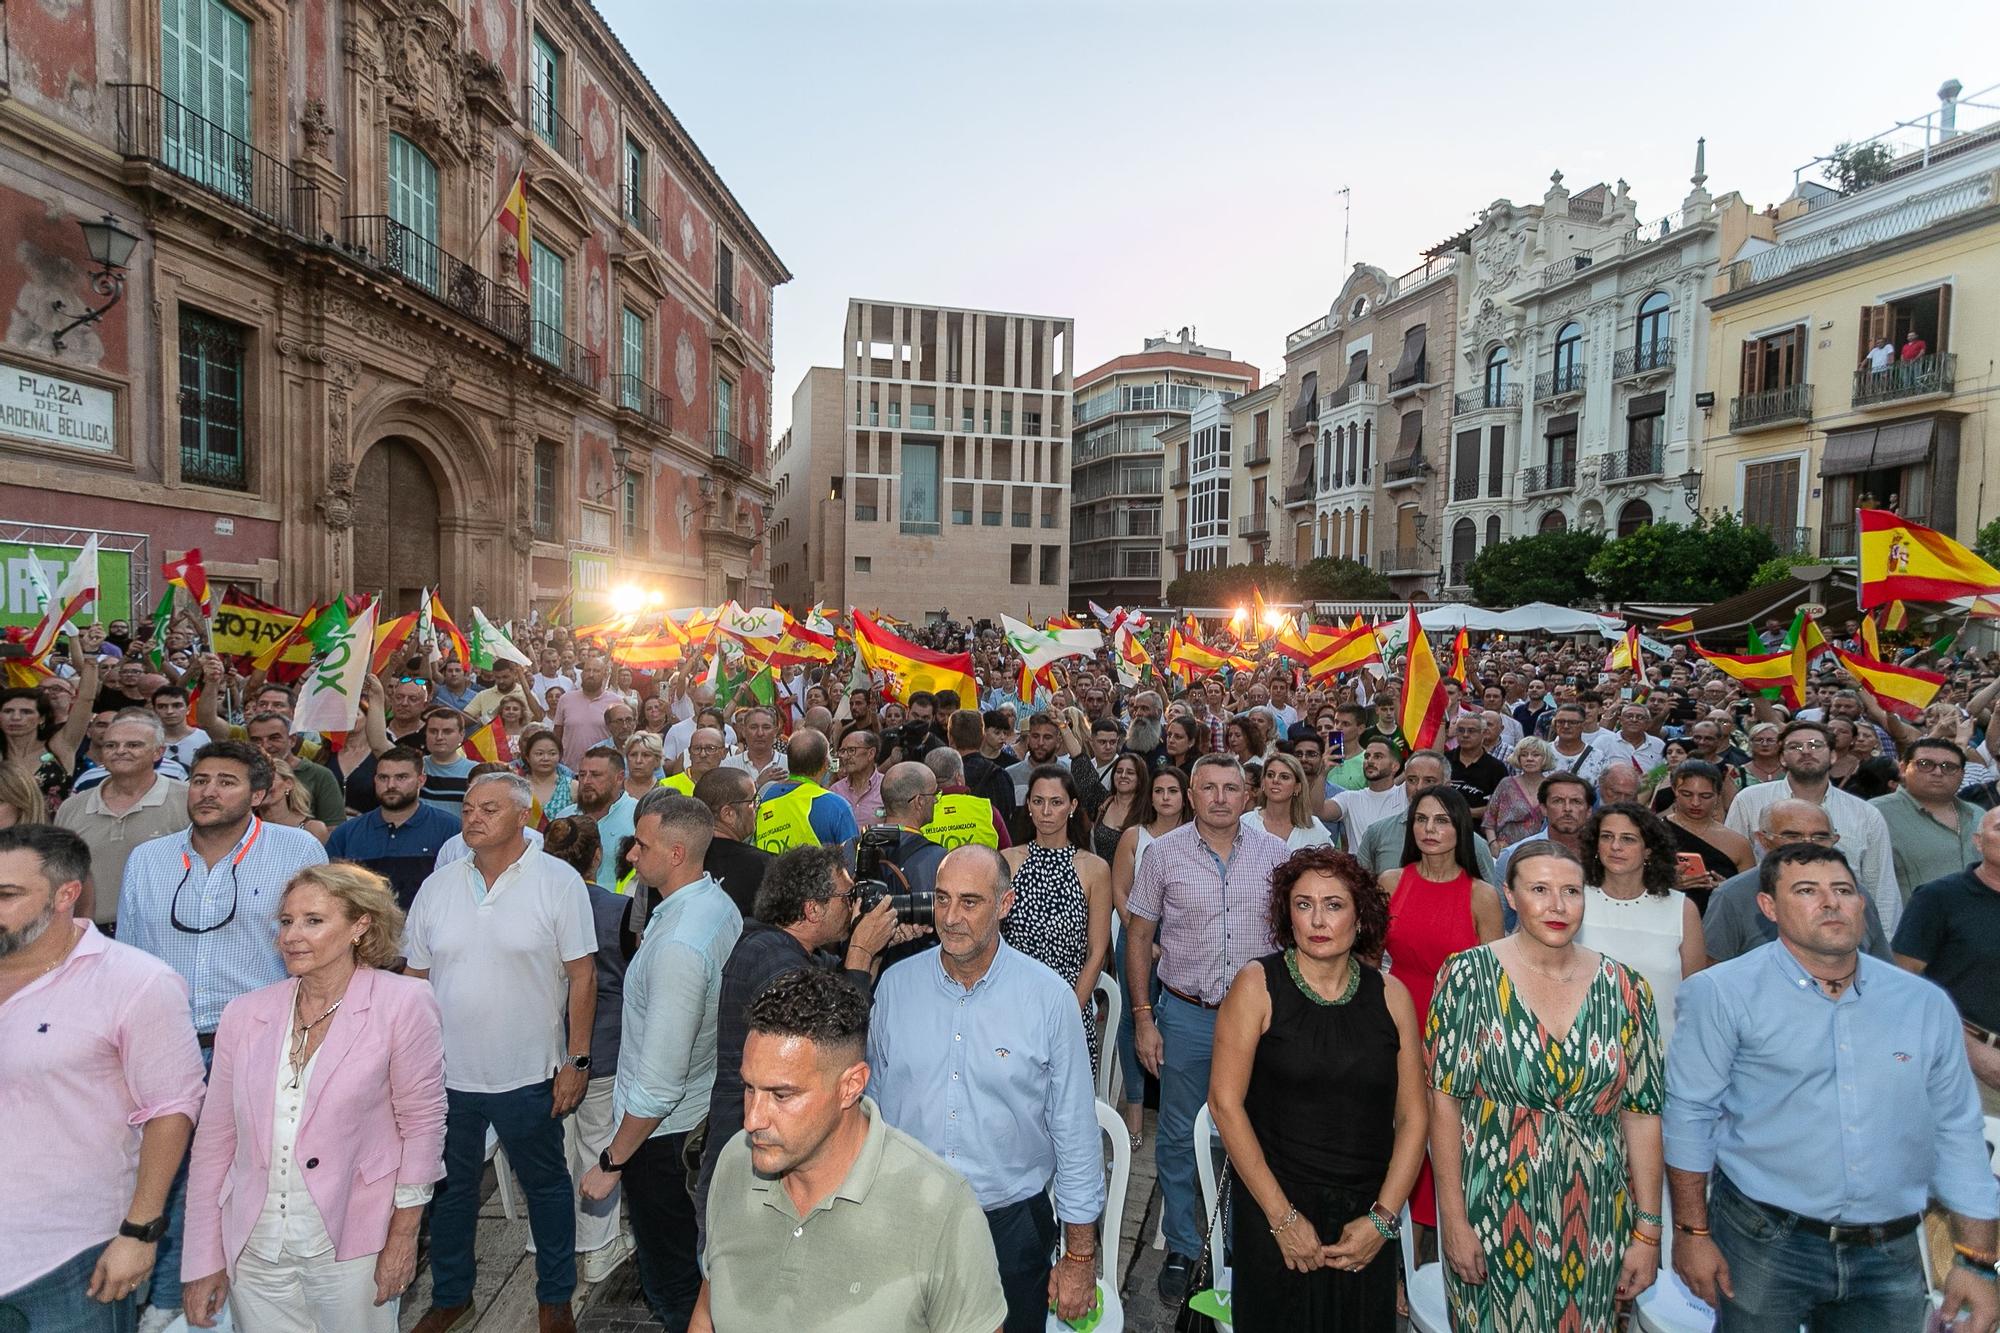 Las imágenes del mitin de Santiago Abascal en Murcia